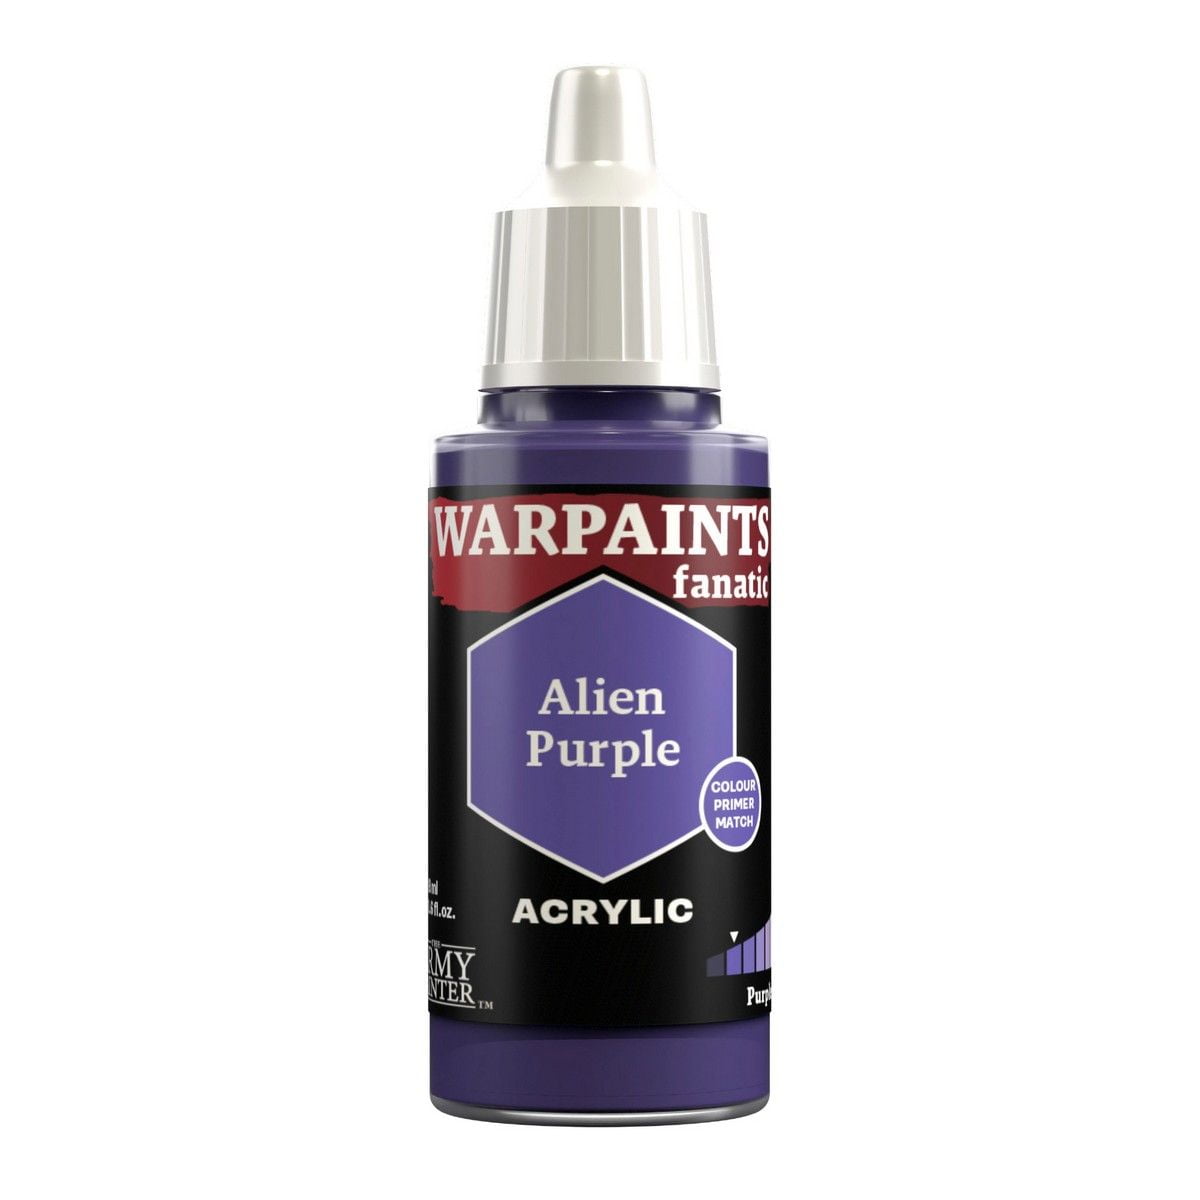 Warpaints Fanatic: Alien Purple - 18ml